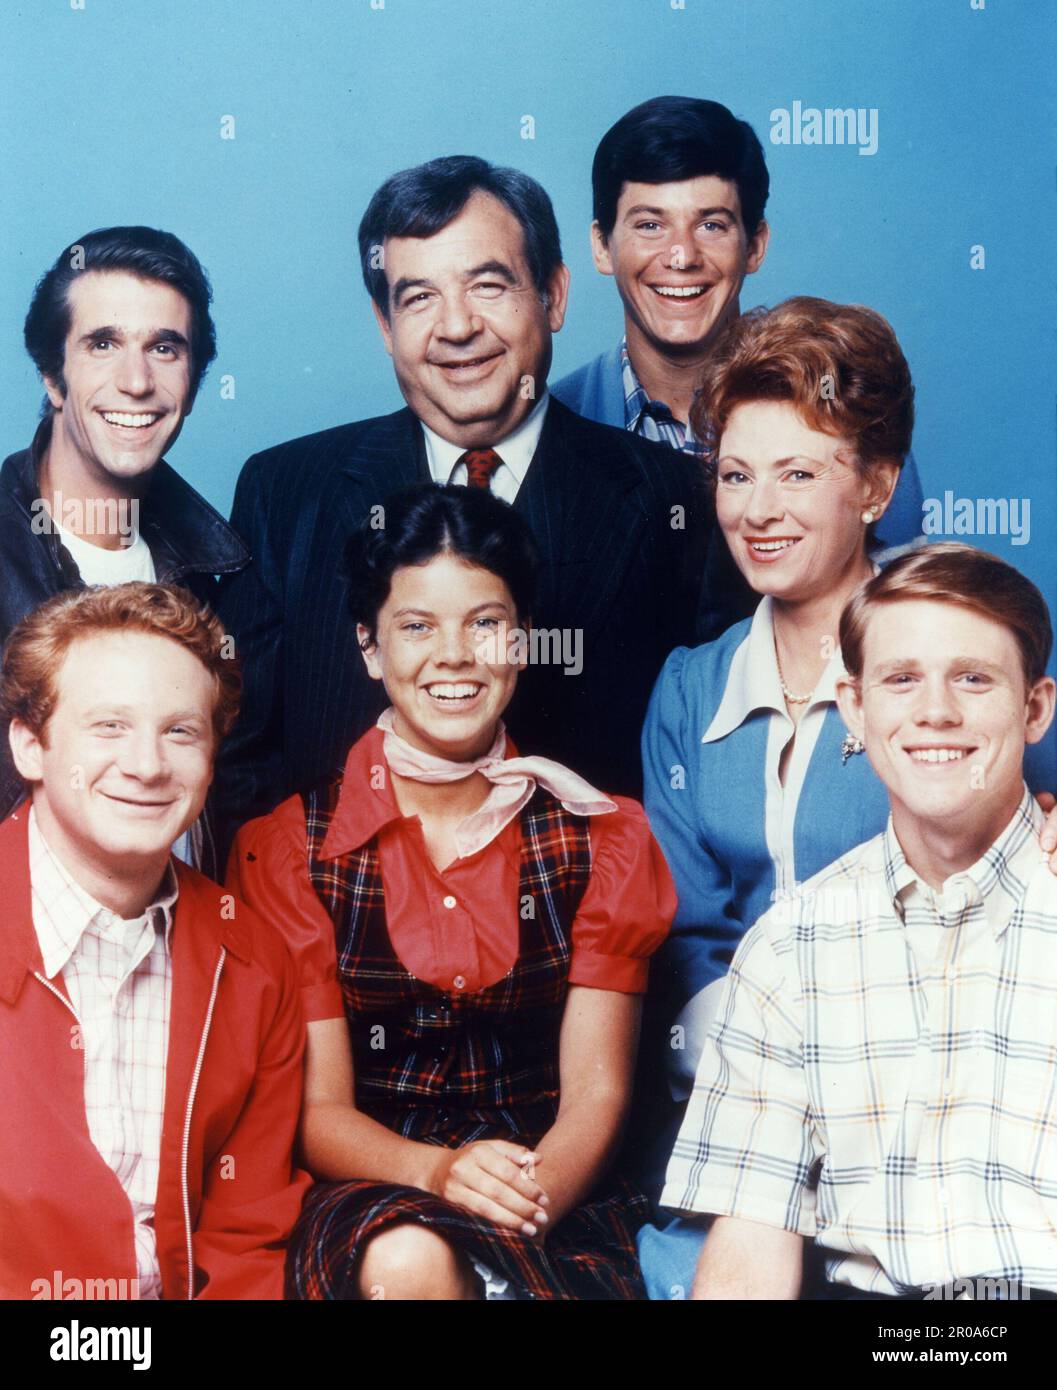 15. Juni 1979, Hollywood, CA, USA: „Happy Days“ Besetzung: DONNY MOST, HENRY WINKLER, ERIN MORAN, TOM BOSLEY, ANSON WILLIAMS, MARION ROSS, RON HOWARD. Happy Days vom 15. Januar 1974 bis zum 19. Juli 1984 wurde eine amerikanische TV-Sitcom auf ABC ausgestrahlt. 255 halbstündige Episoden mit über 11 Saisons. Eine der erfolgreichsten Serien der 1970er. Die Serie präsentierte eine idealisierte Vision des Lebens im Mittleren Westen der USA der 1950er und Anfang der 1960er Jahre. (Kreditbild: © Miller-Milkis Productions/Entertainment Pictures via ZUMA Press Wire) NUR REDAKTIONELLE VERWENDUNG! Nicht für den kommerziellen GEBRAUCH! Stockfoto